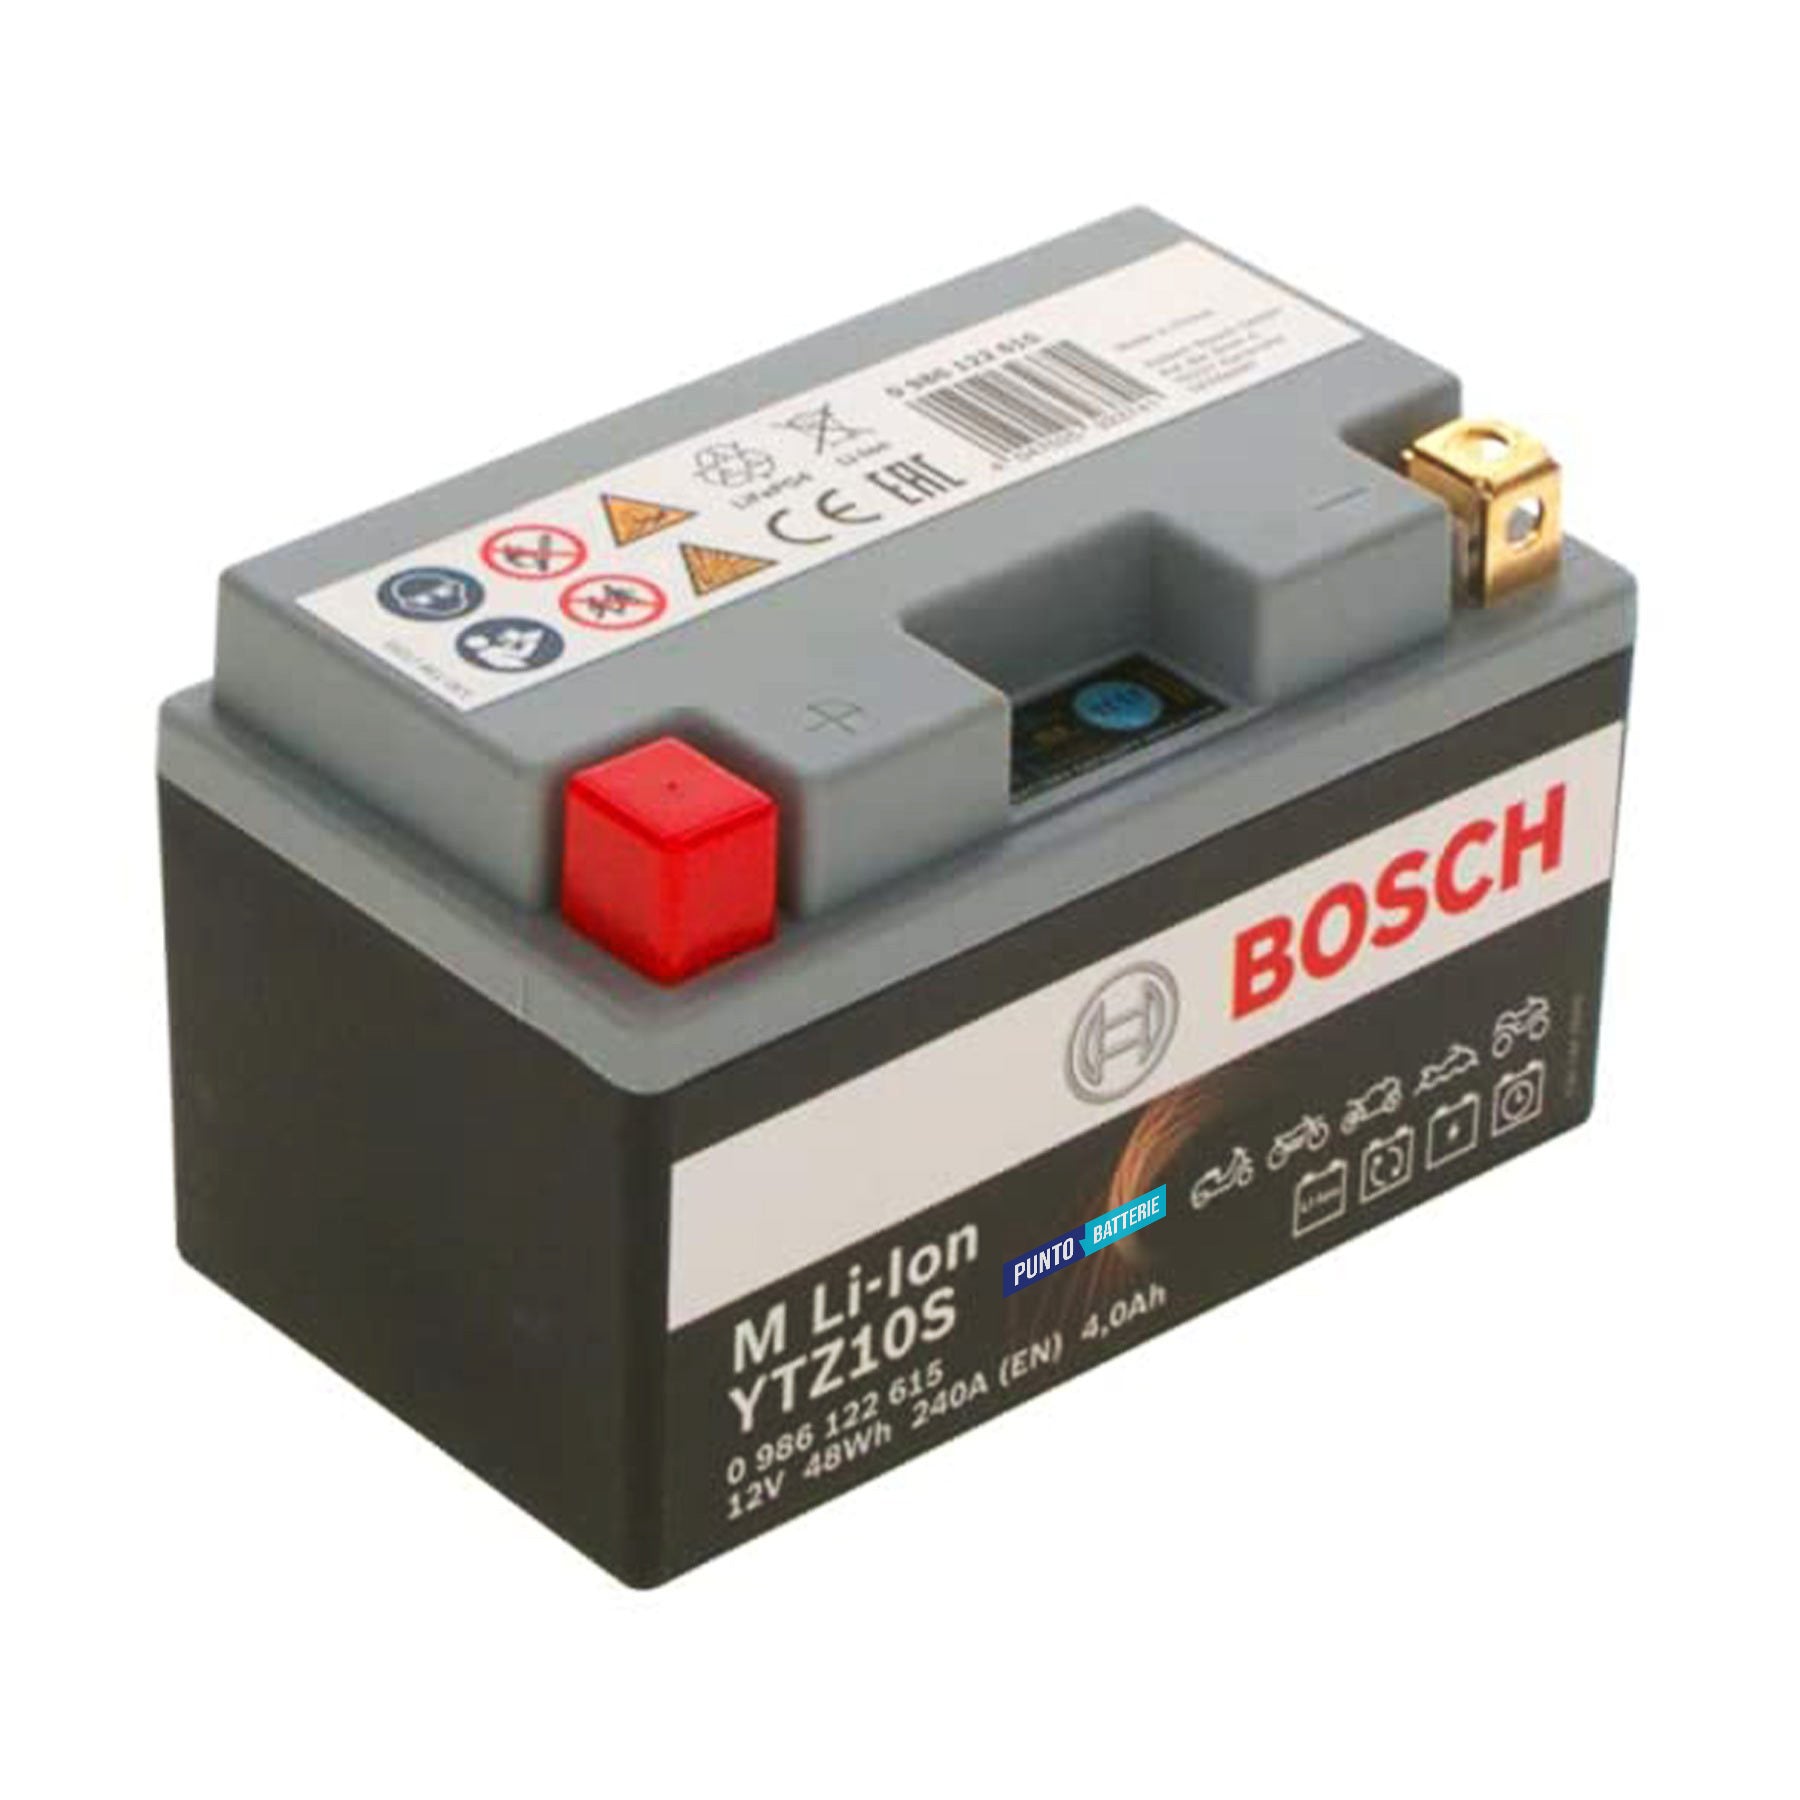 Batteria originale Bosch M Li-ion LTZ10S, dimensioni 150 x 87 x 164, polo positivo a sinistra, 12 volt, 4 amperora, 240 ampere. Batteria per moto, scooter e powersport.